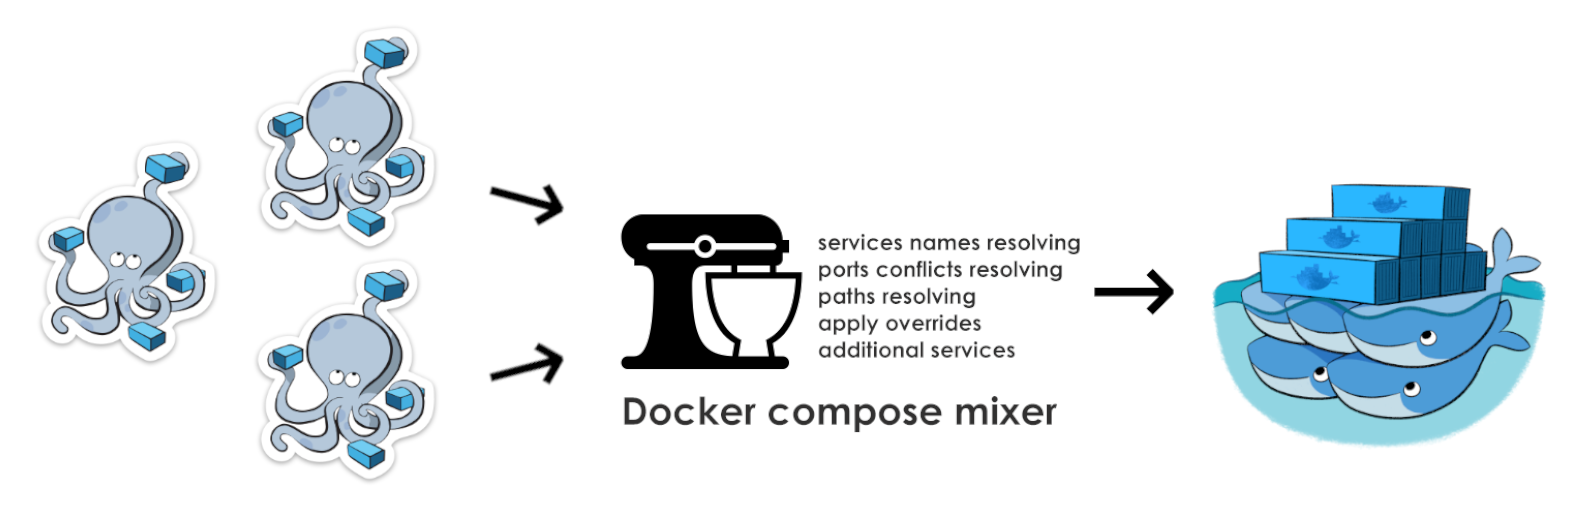 Docker compose и объединение проектов с помощью mixer-a - 1